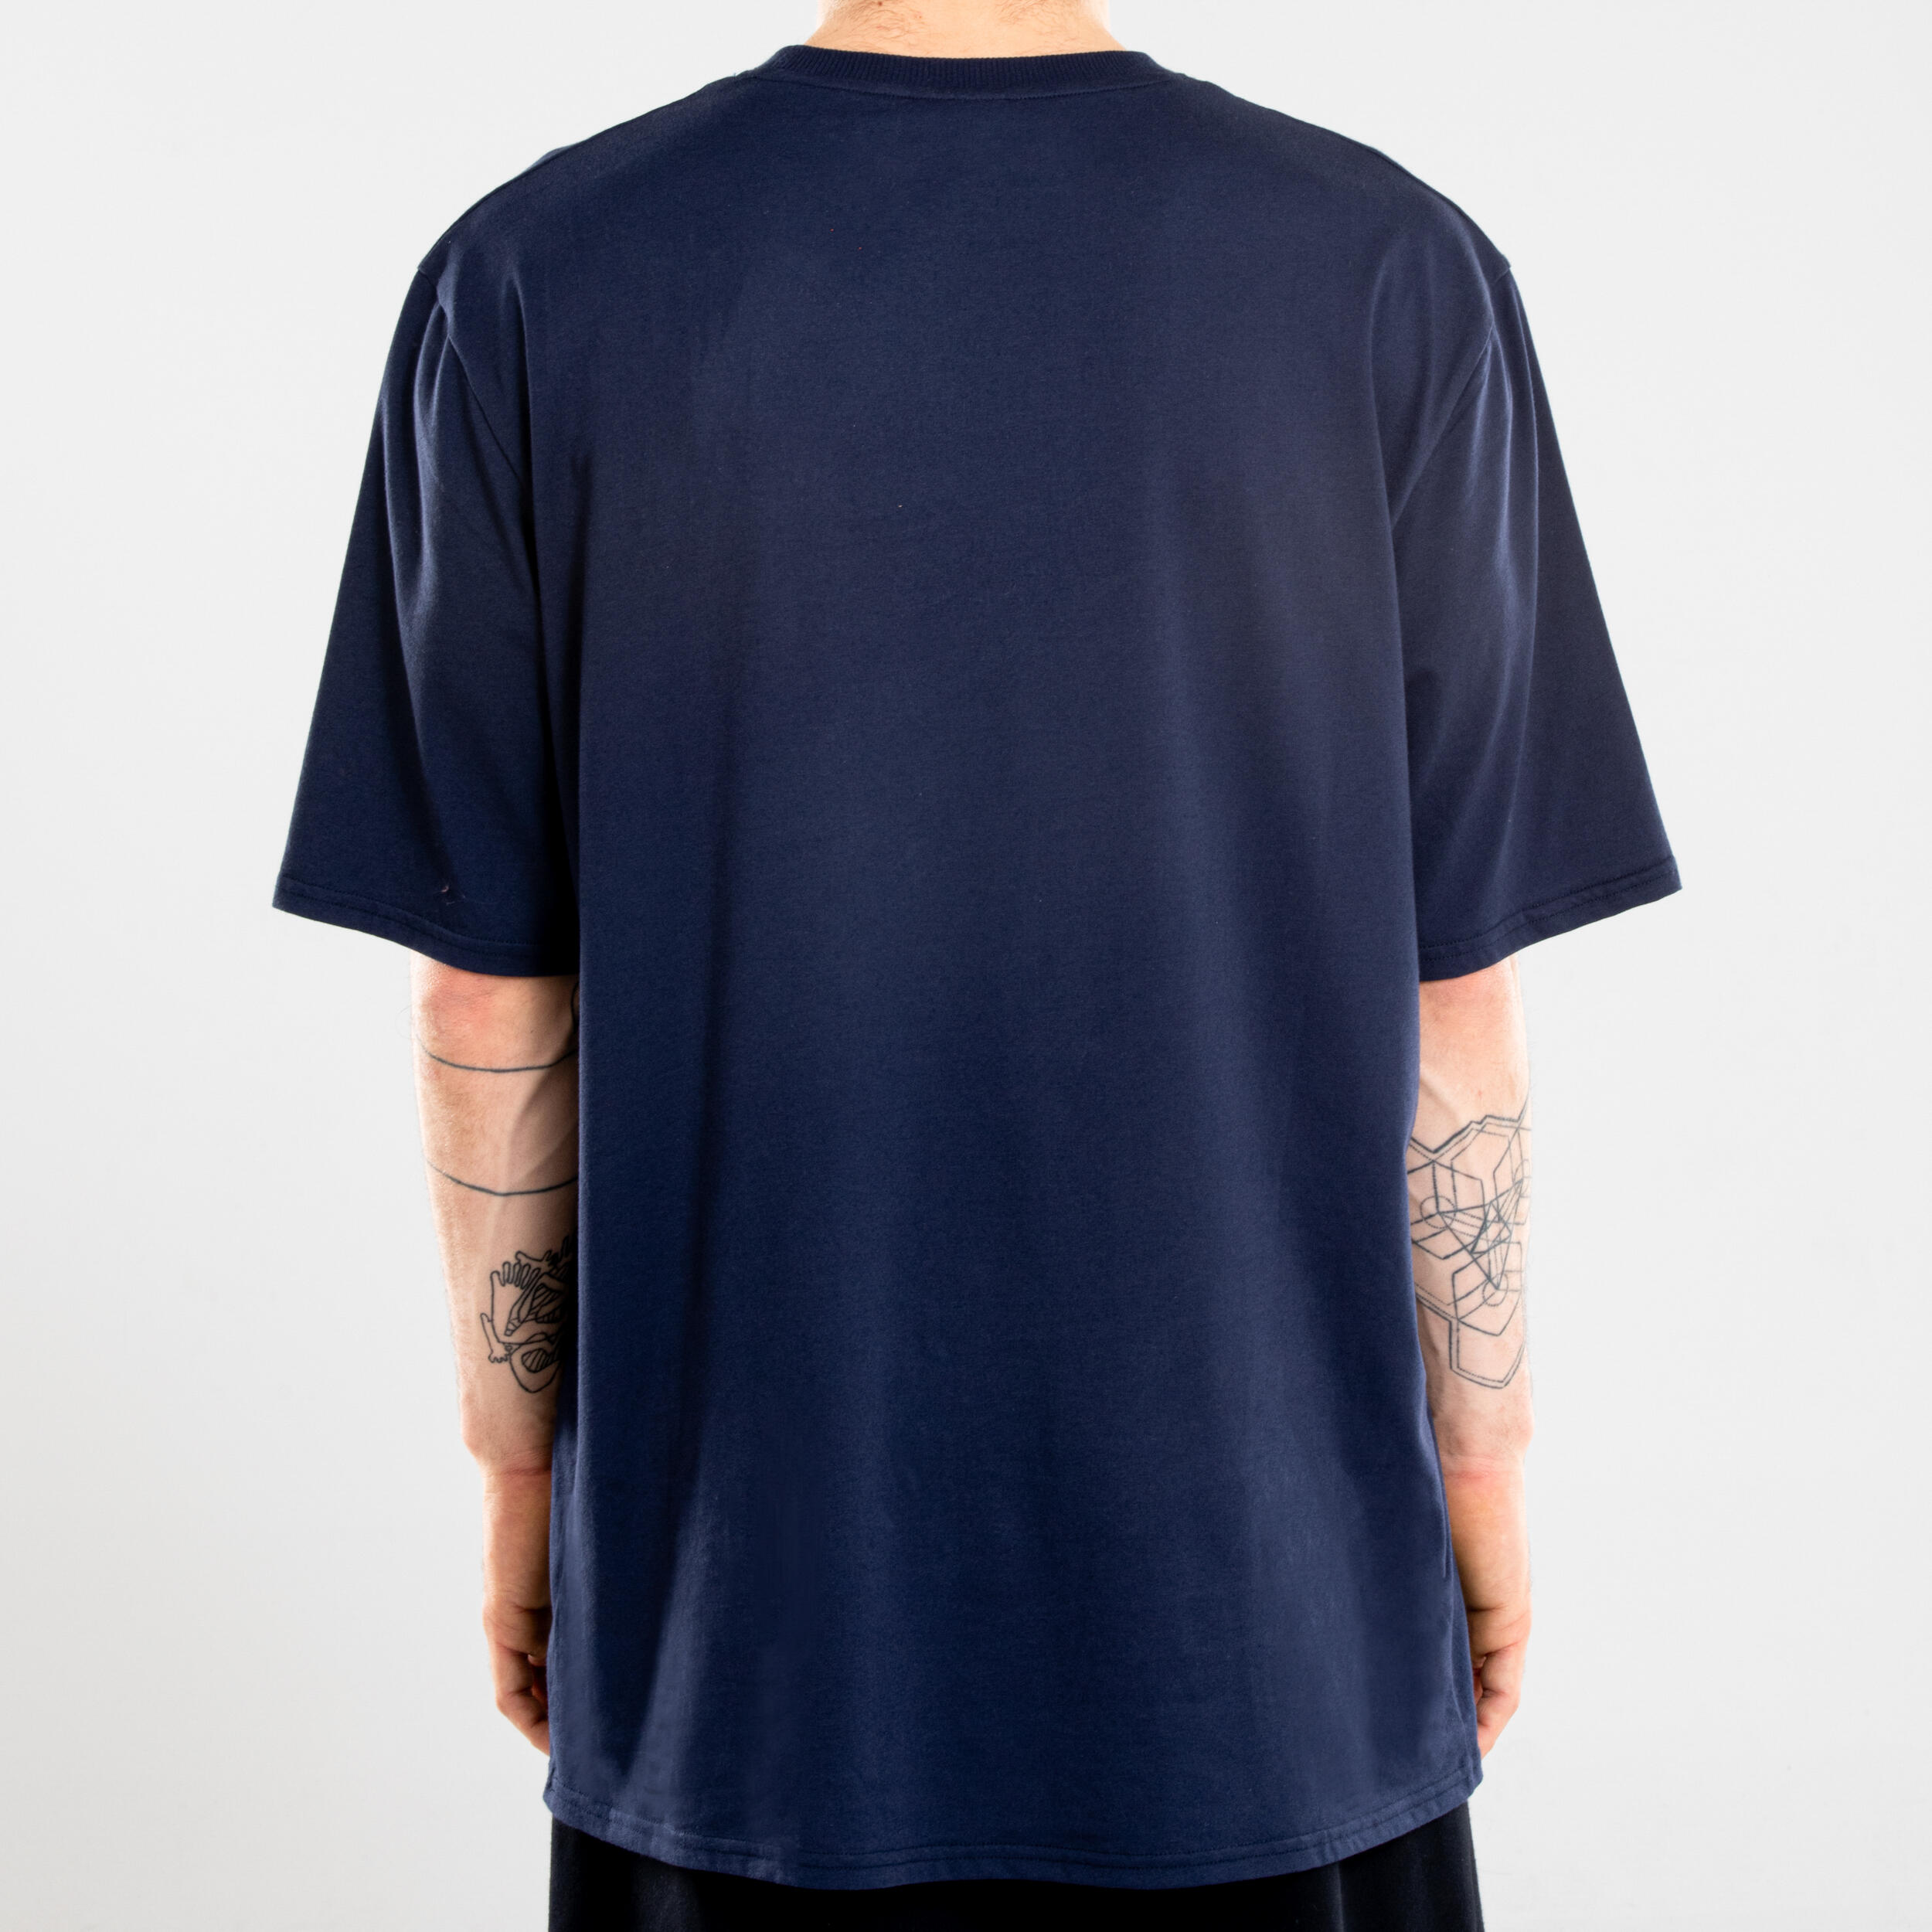 Men's Urban Dance T-Shirt - Navy Blue Print 4/6